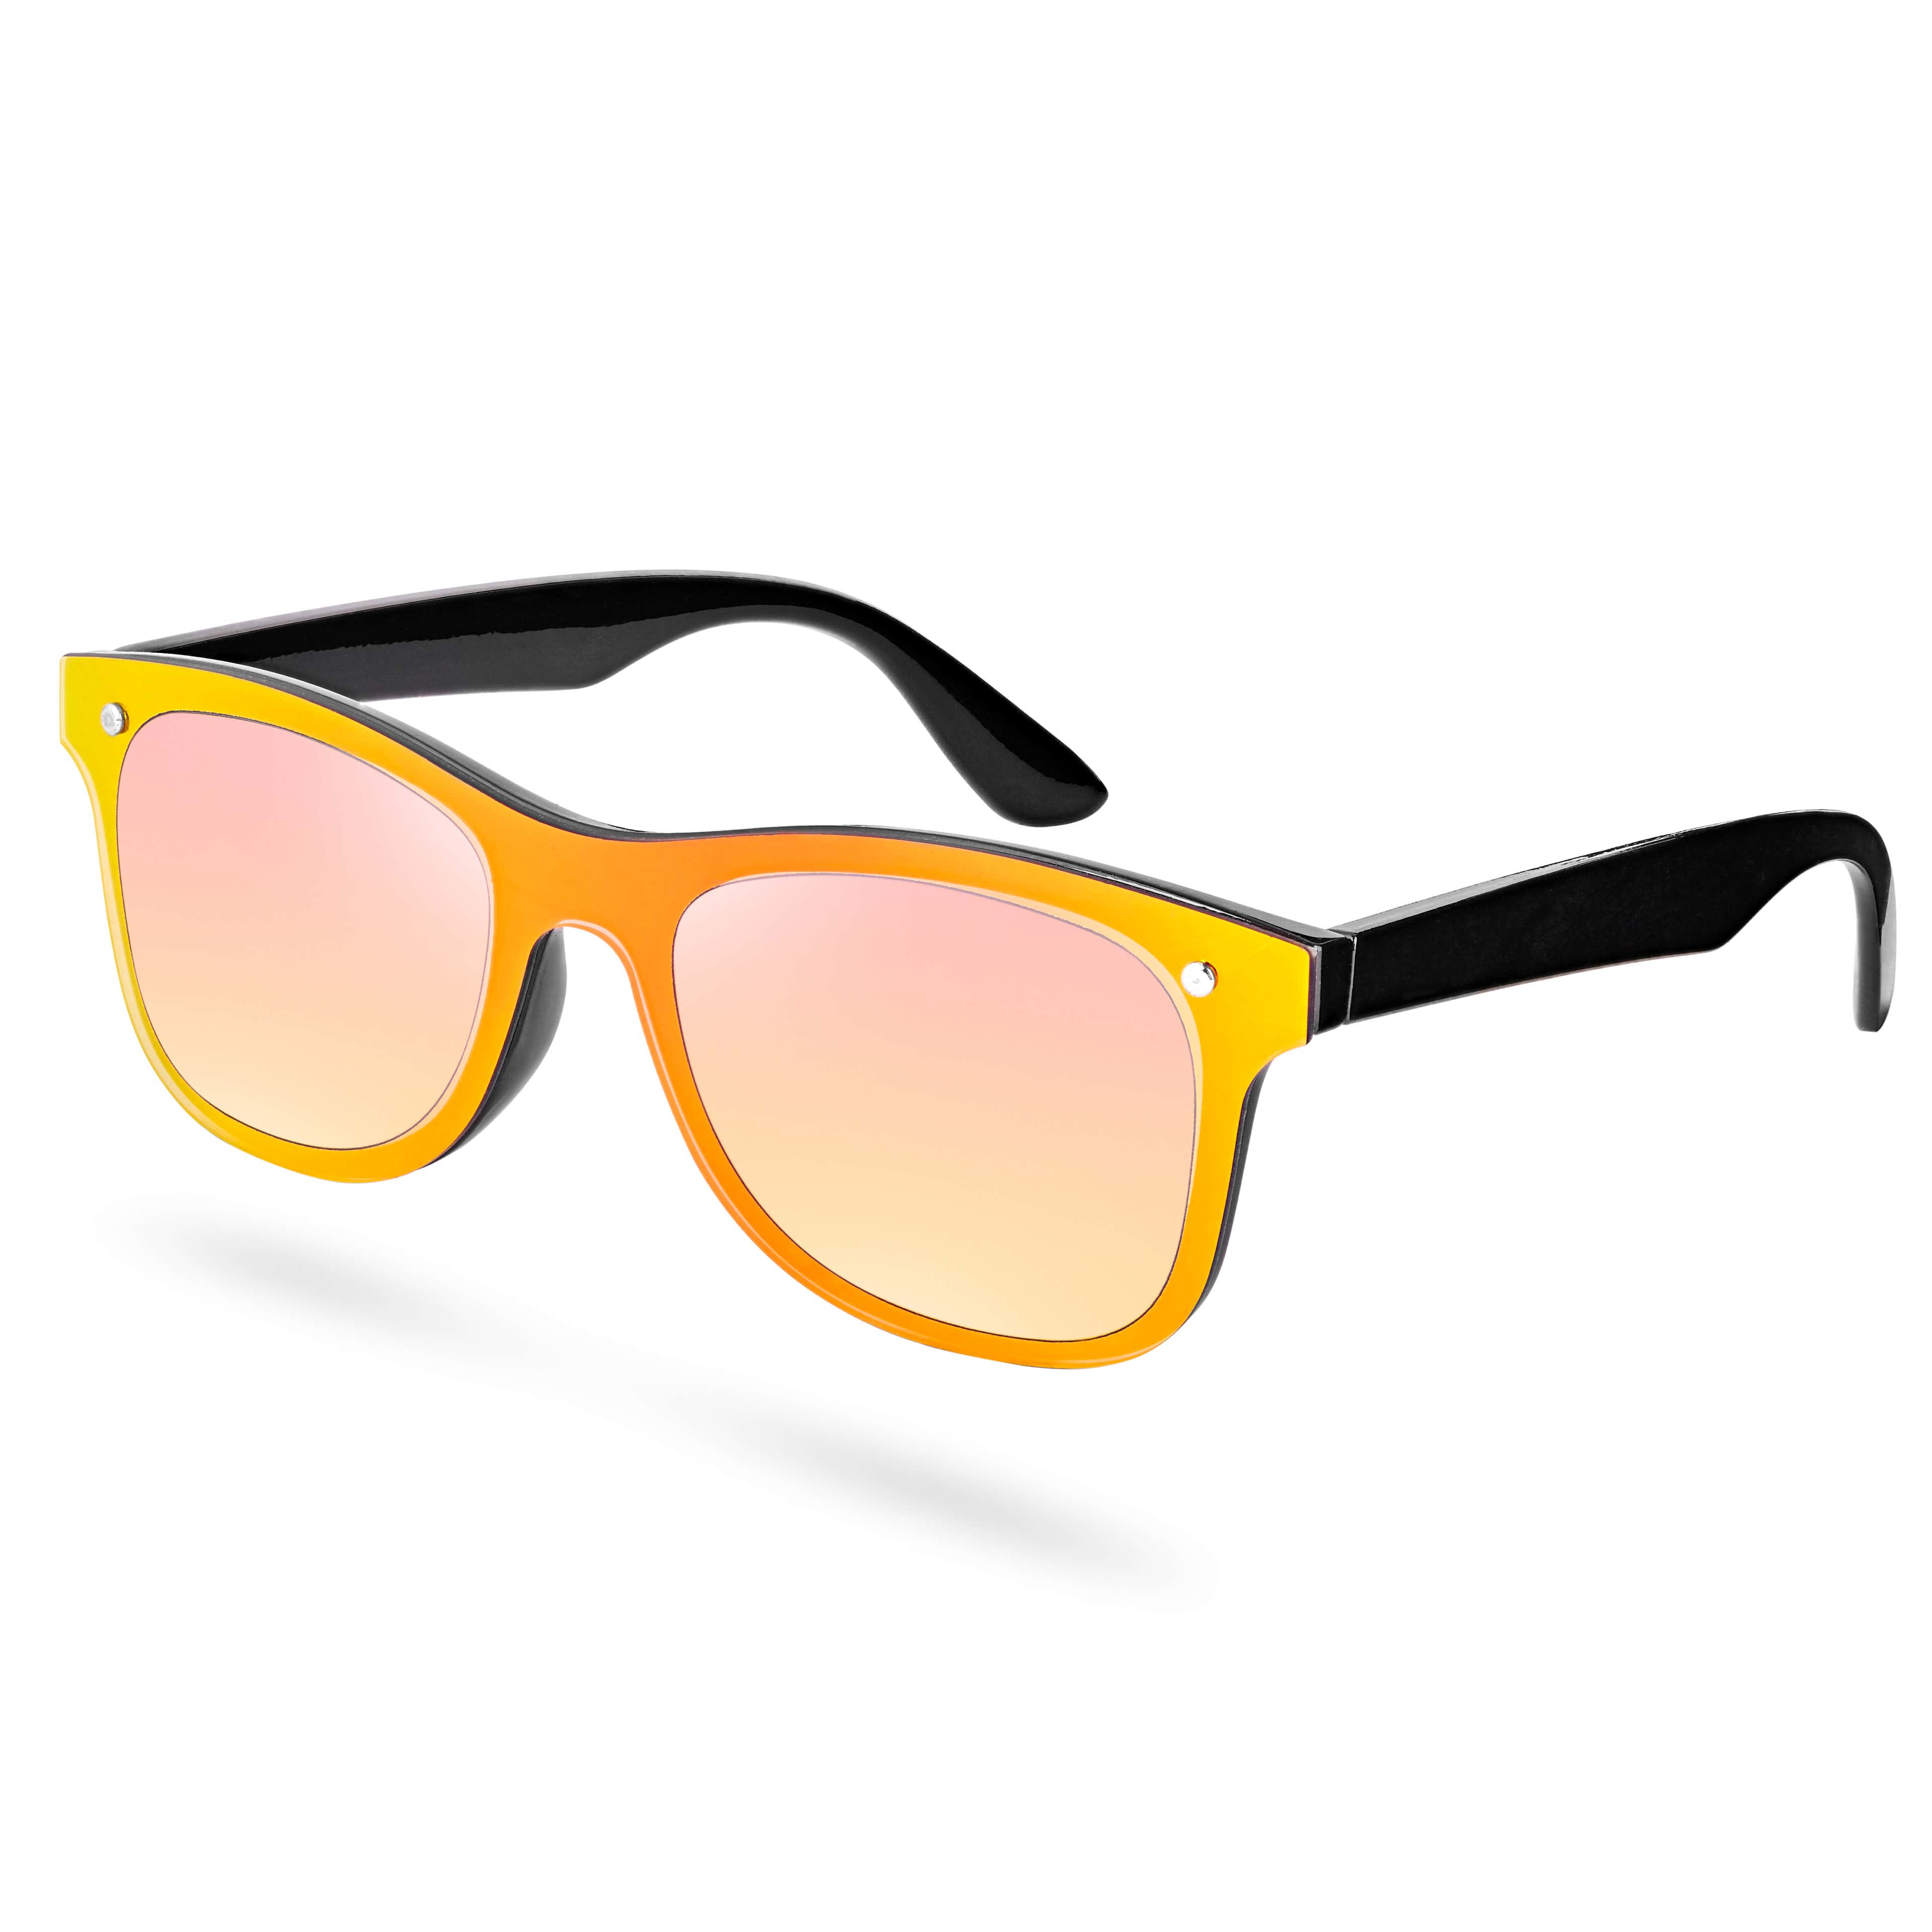 Sárga és fekete keretes napszemüveg